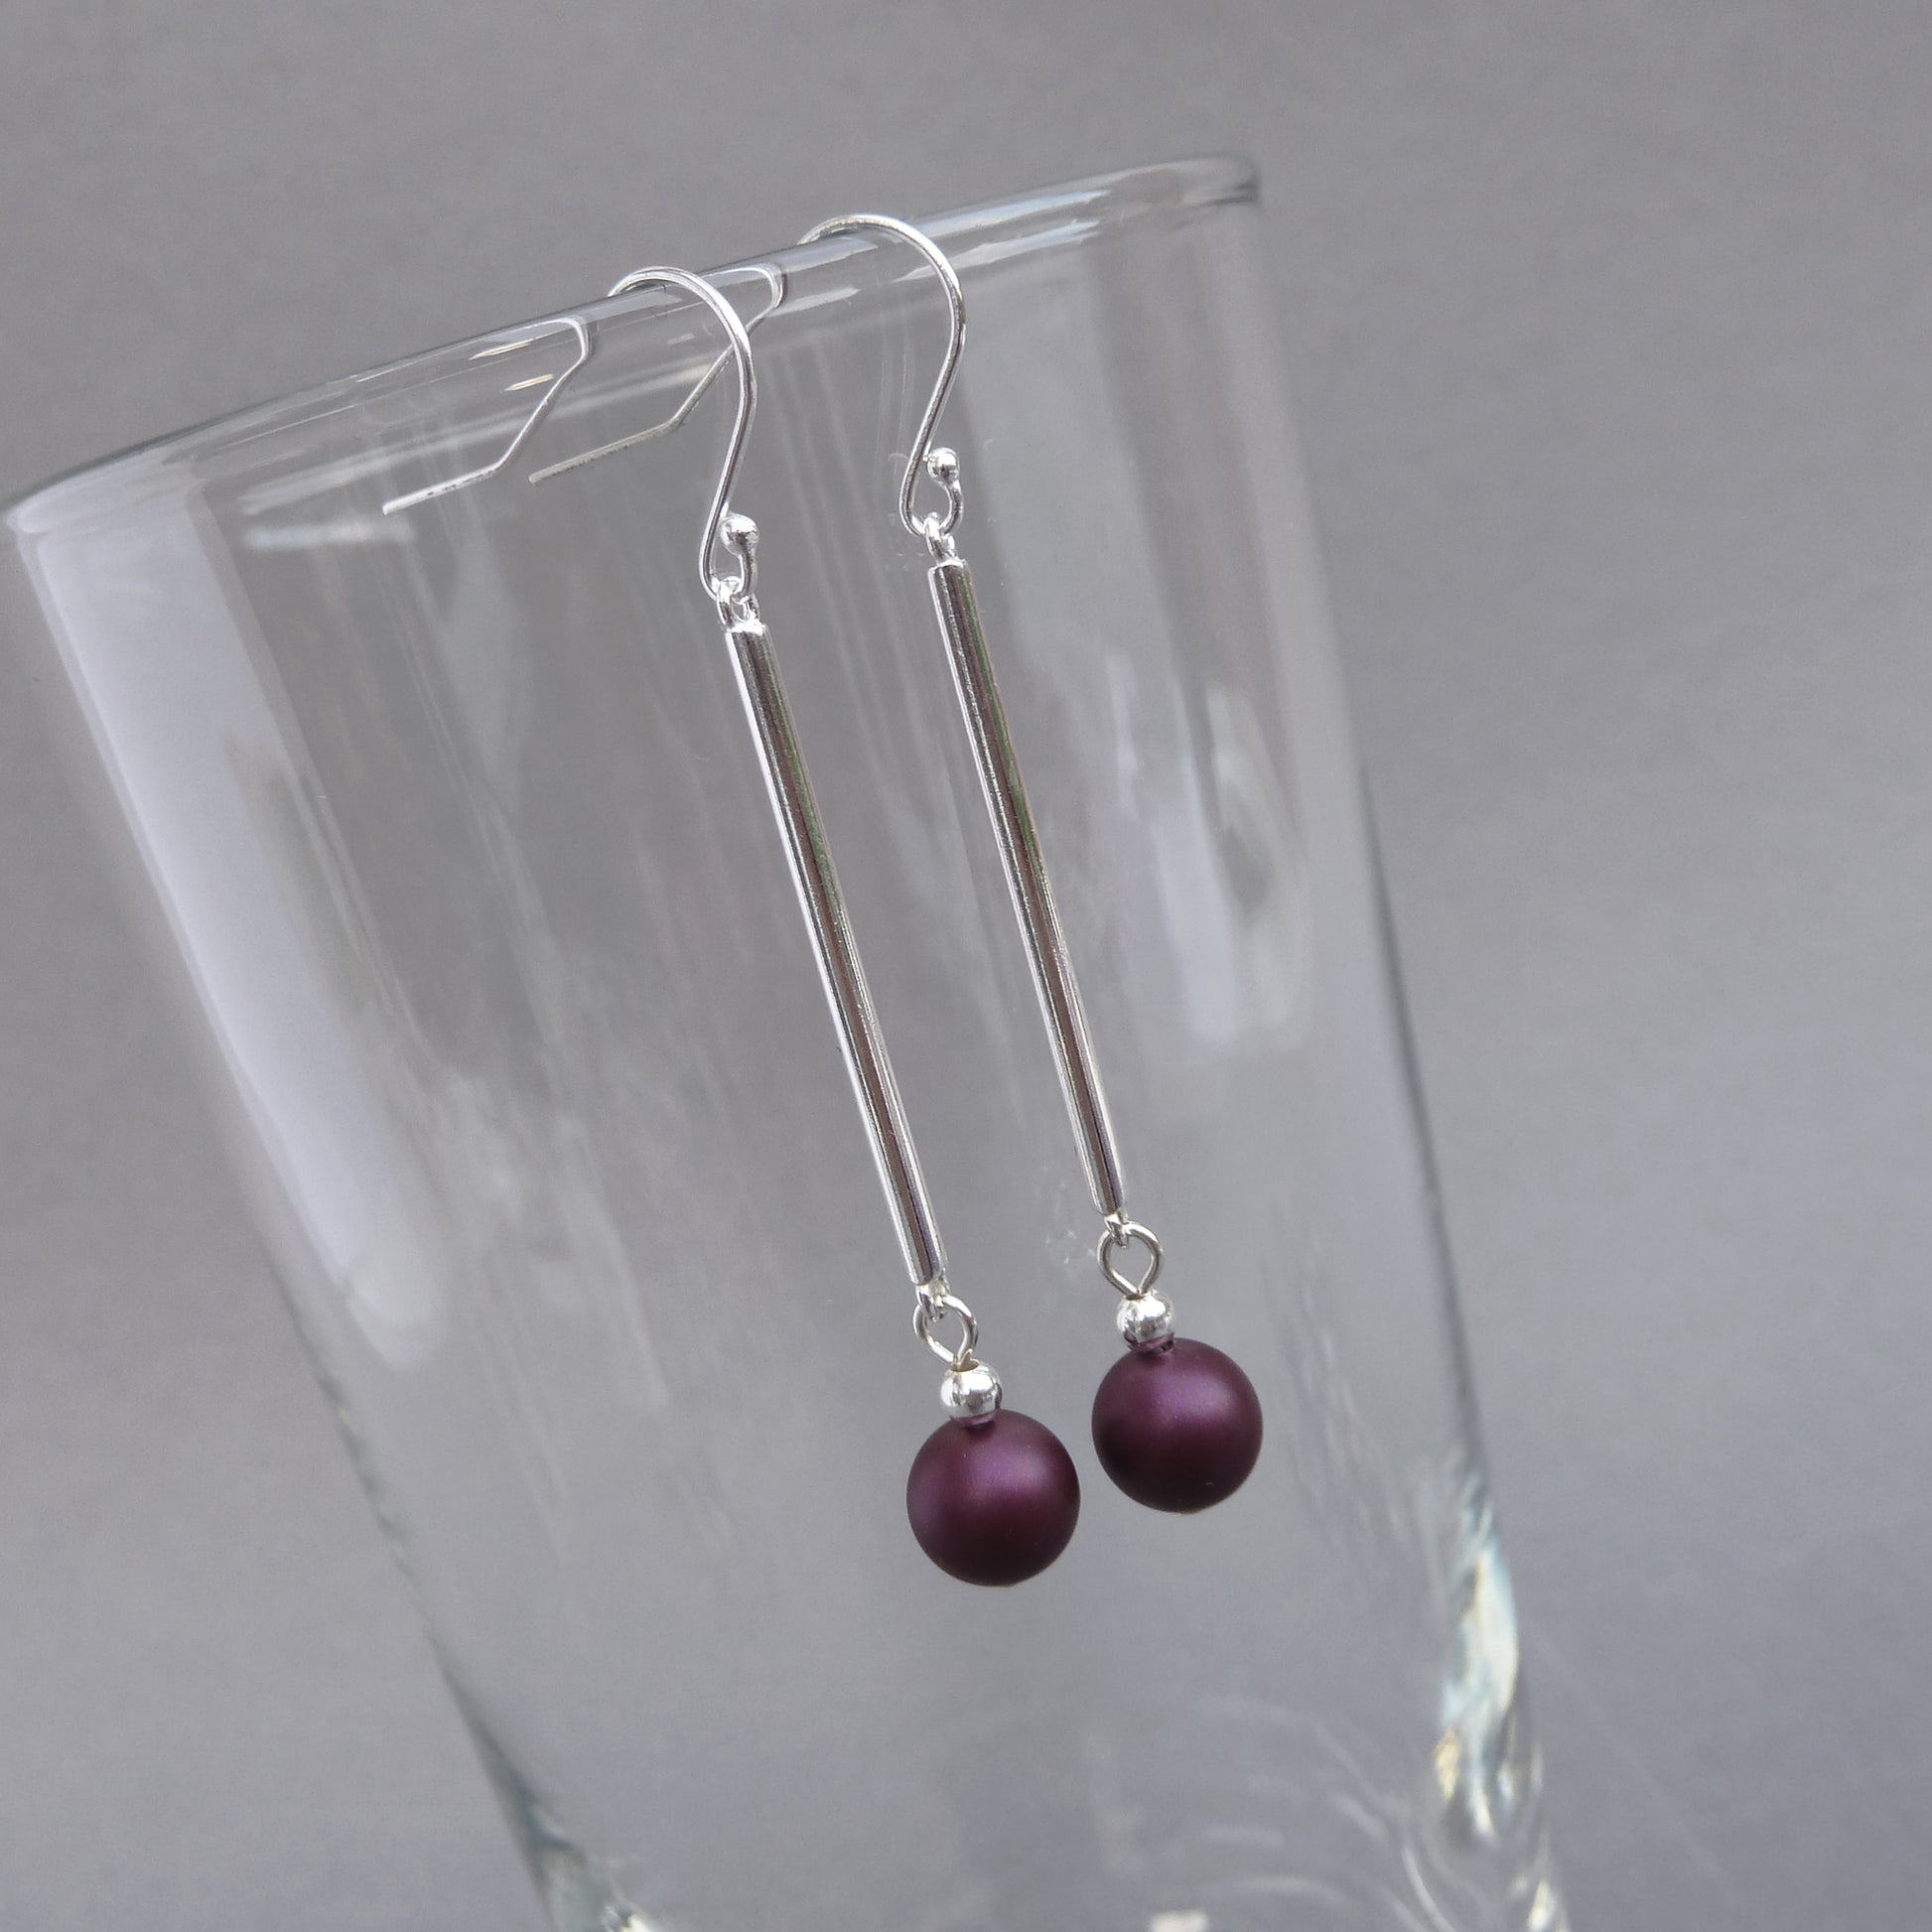 Long silver bar and plum drop earrings